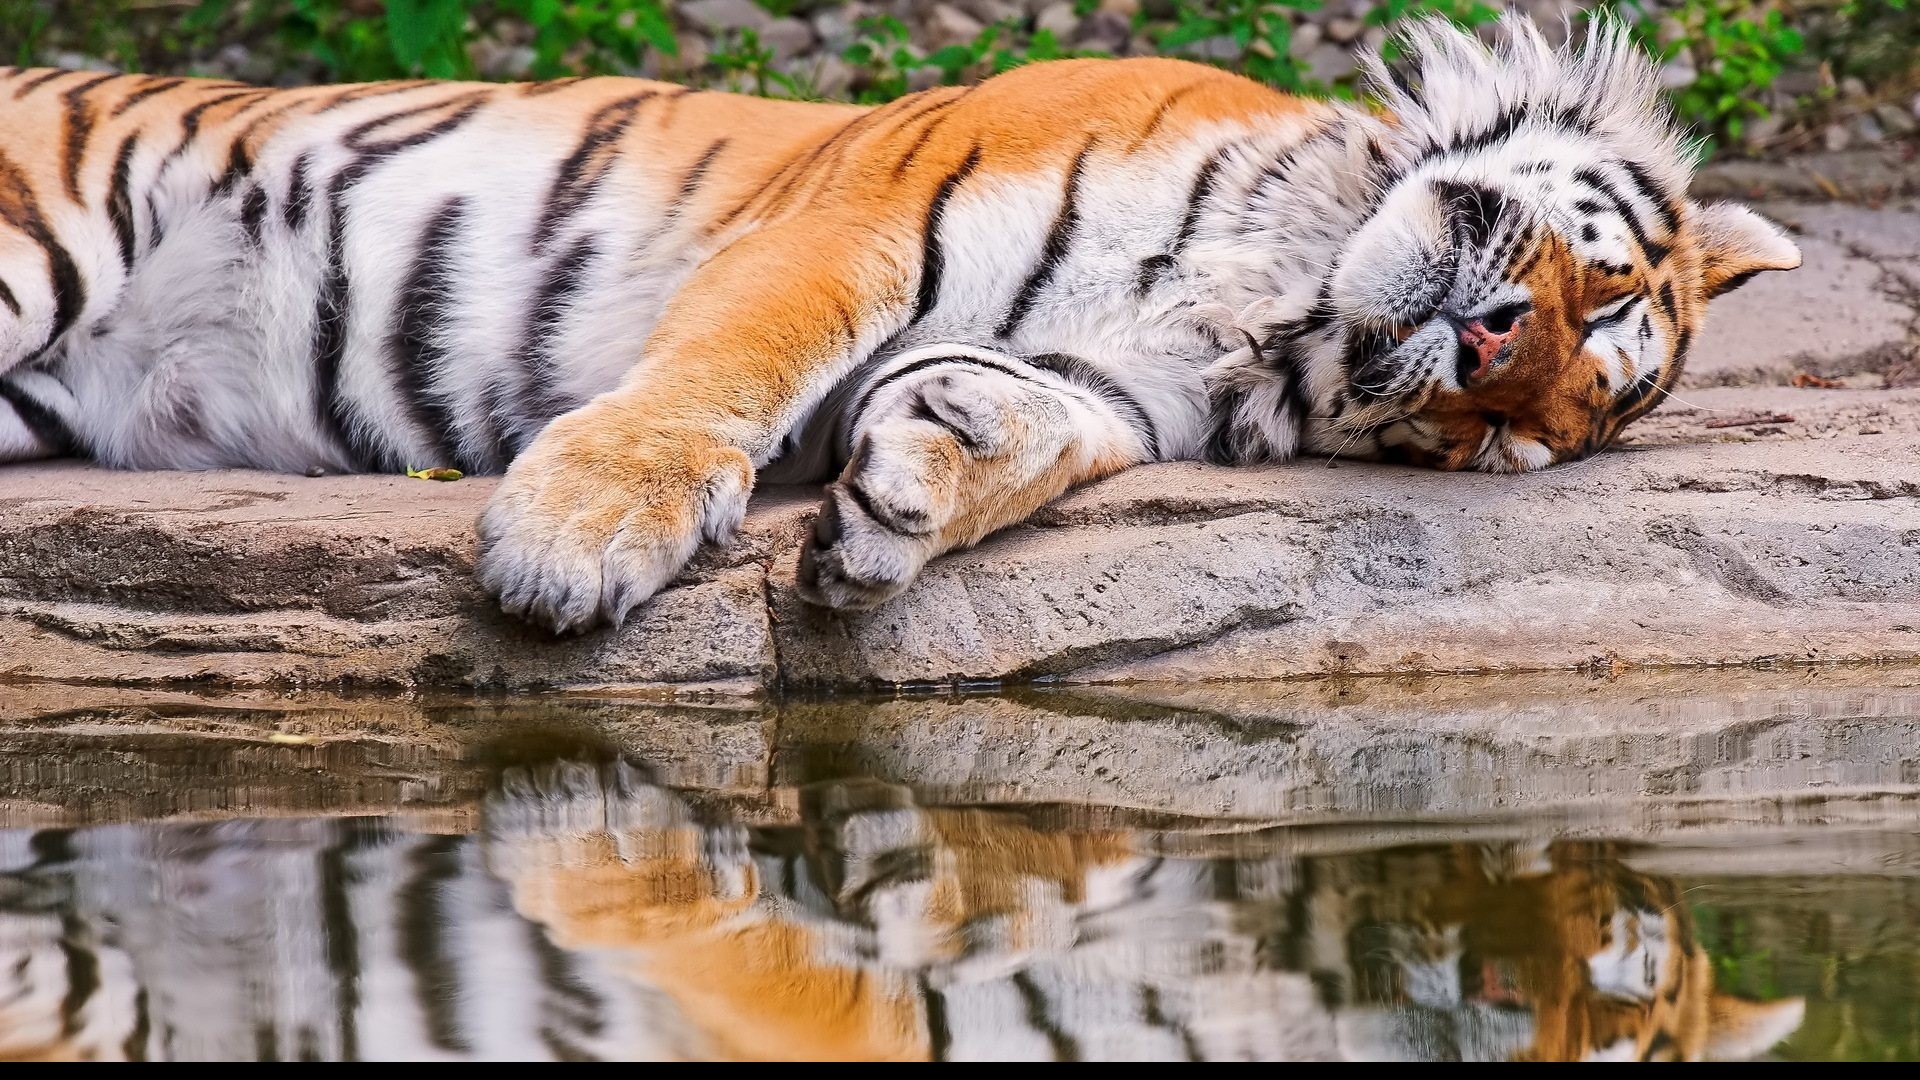 Tigre endormi.jpg